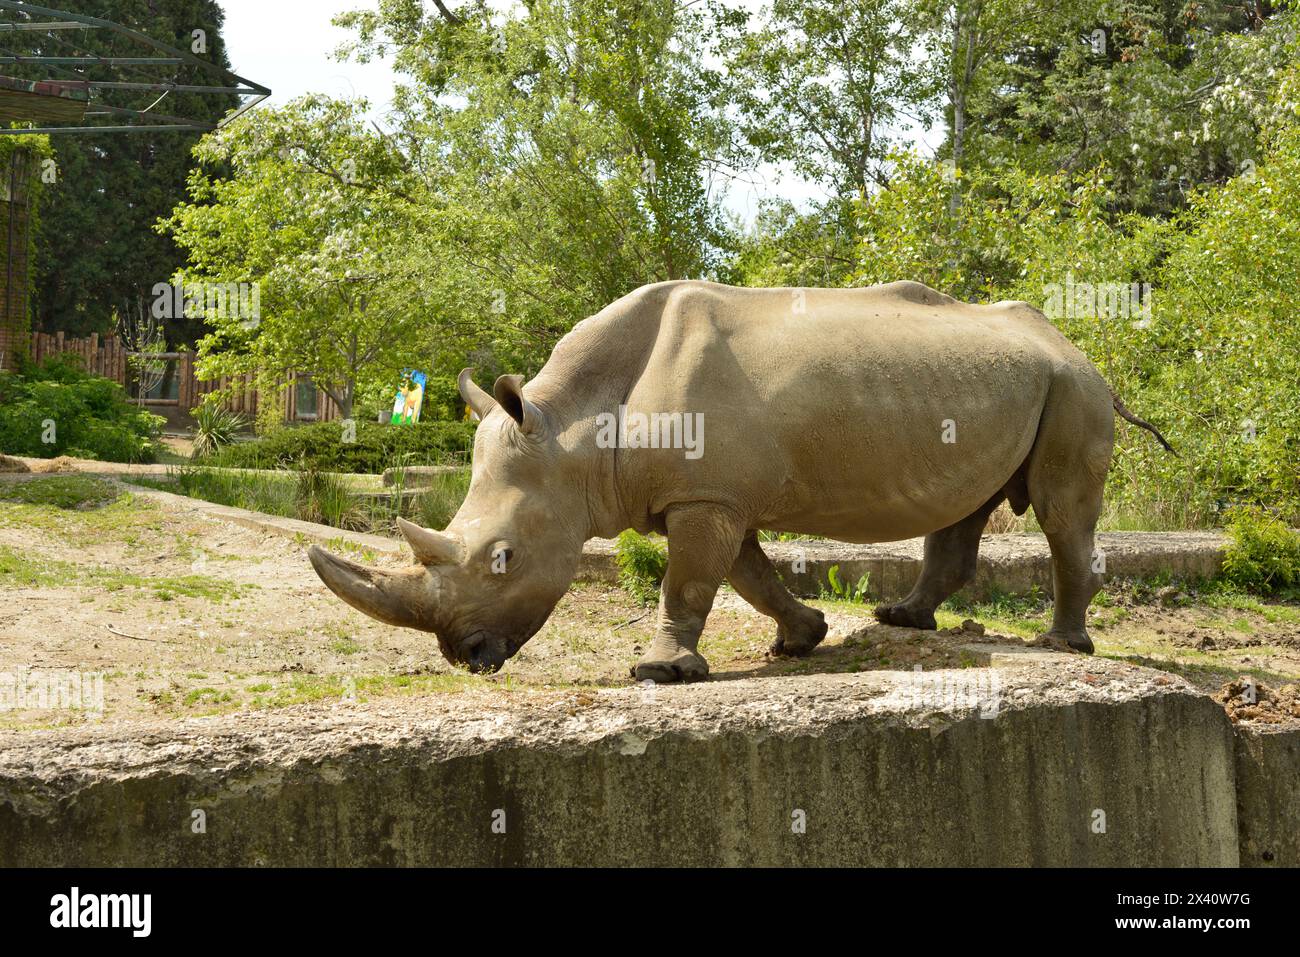 Rhinocéros blancs mâles Ceratotherium simum animal sauvage menacé d'extinction dans un habitat captif au zoo de Sofia, Sofia, Bulgarie, Europe de l'est, Balkans, UE Banque D'Images